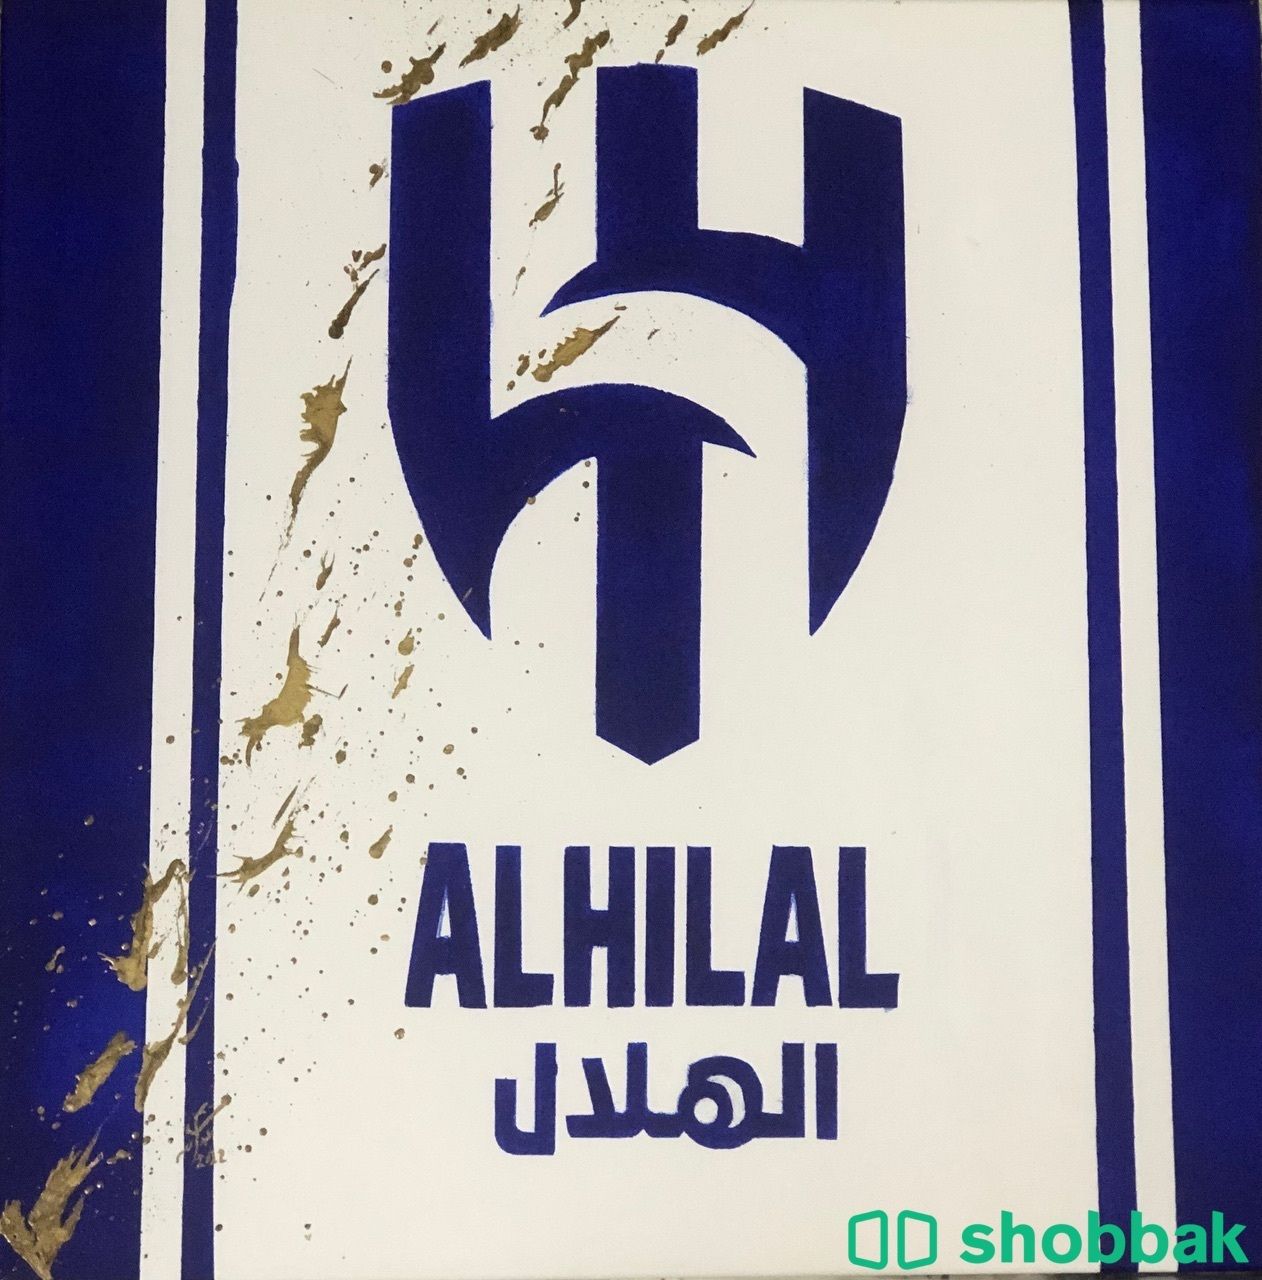 لوحة شعار الهلال Shobbak Saudi Arabia